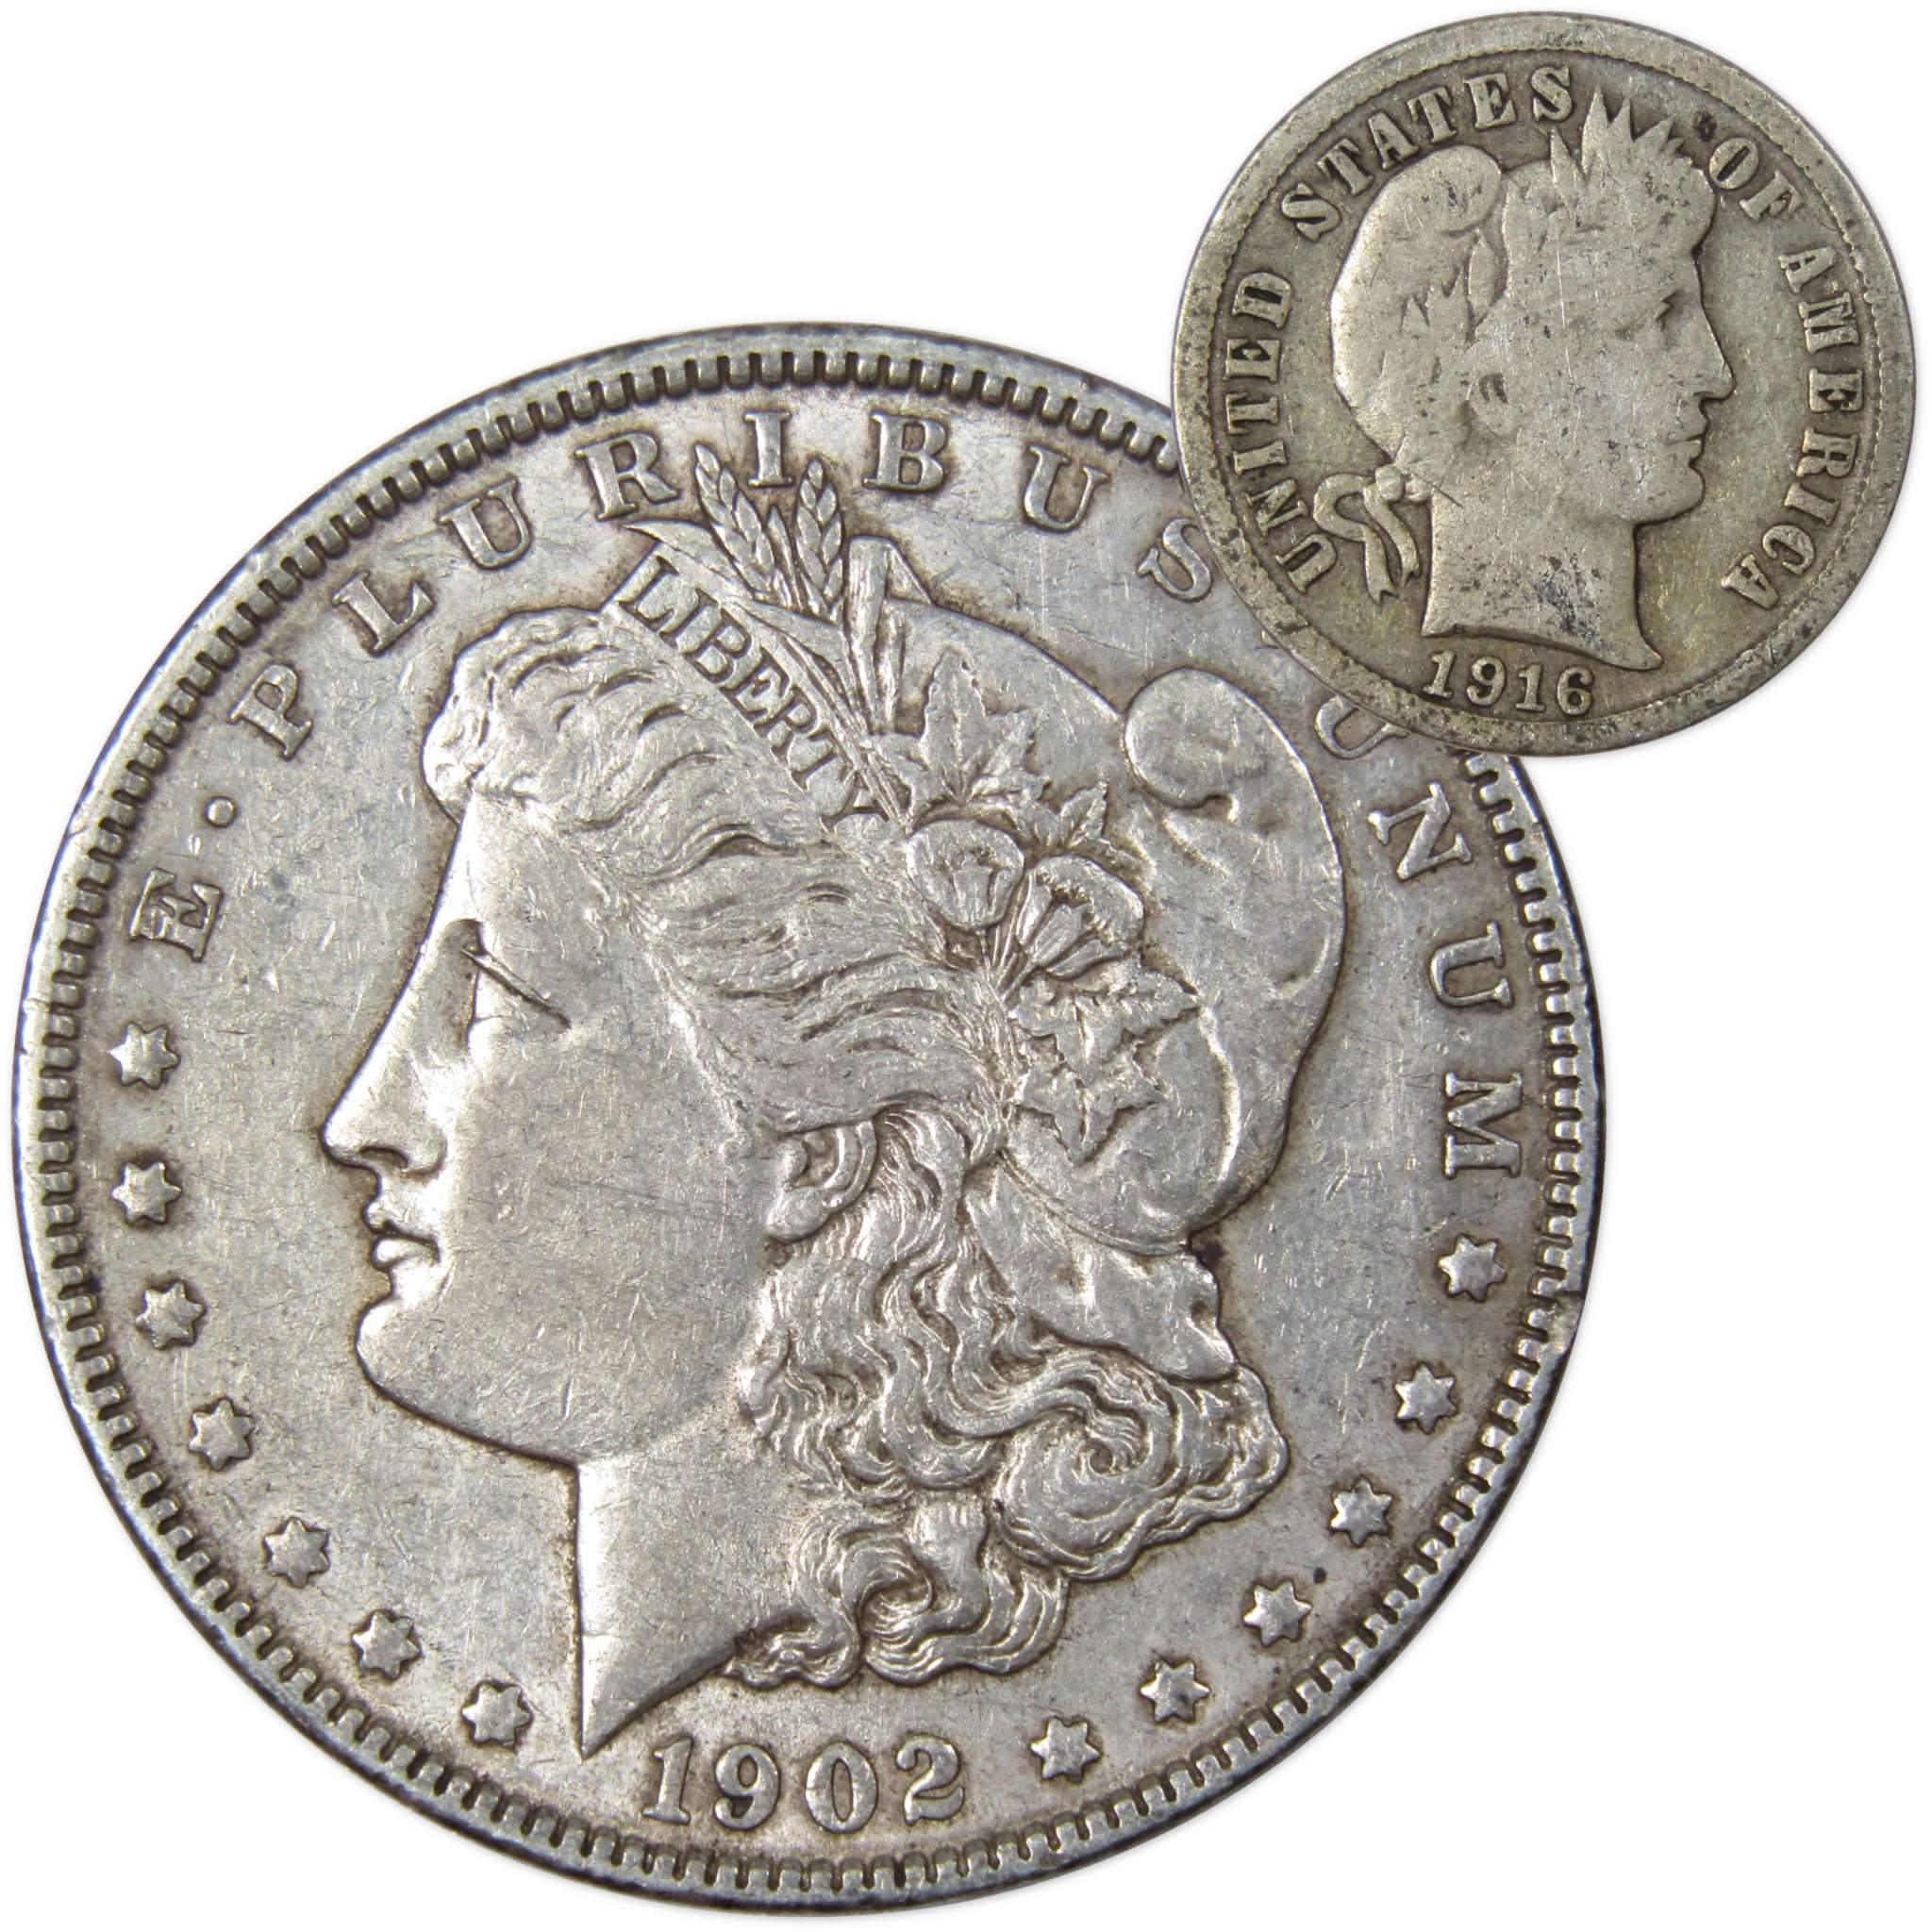 1902 Morgan Dollar XF EF Extremely Fine 90% Silver with 1916 Barber Dime G Good - Morgan coin - Morgan silver dollar - Morgan silver dollar for sale - Profile Coins &amp; Collectibles